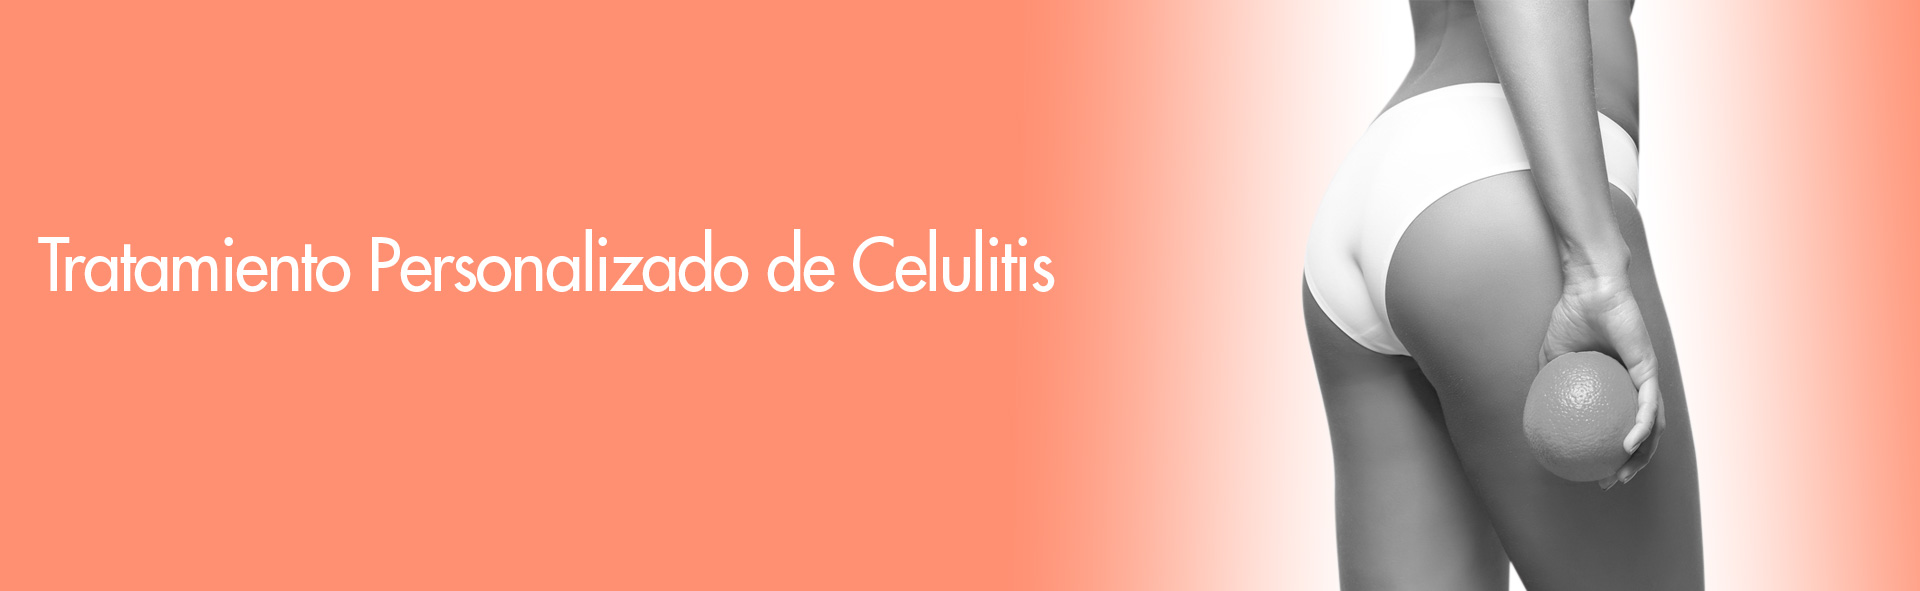 cellutites banner